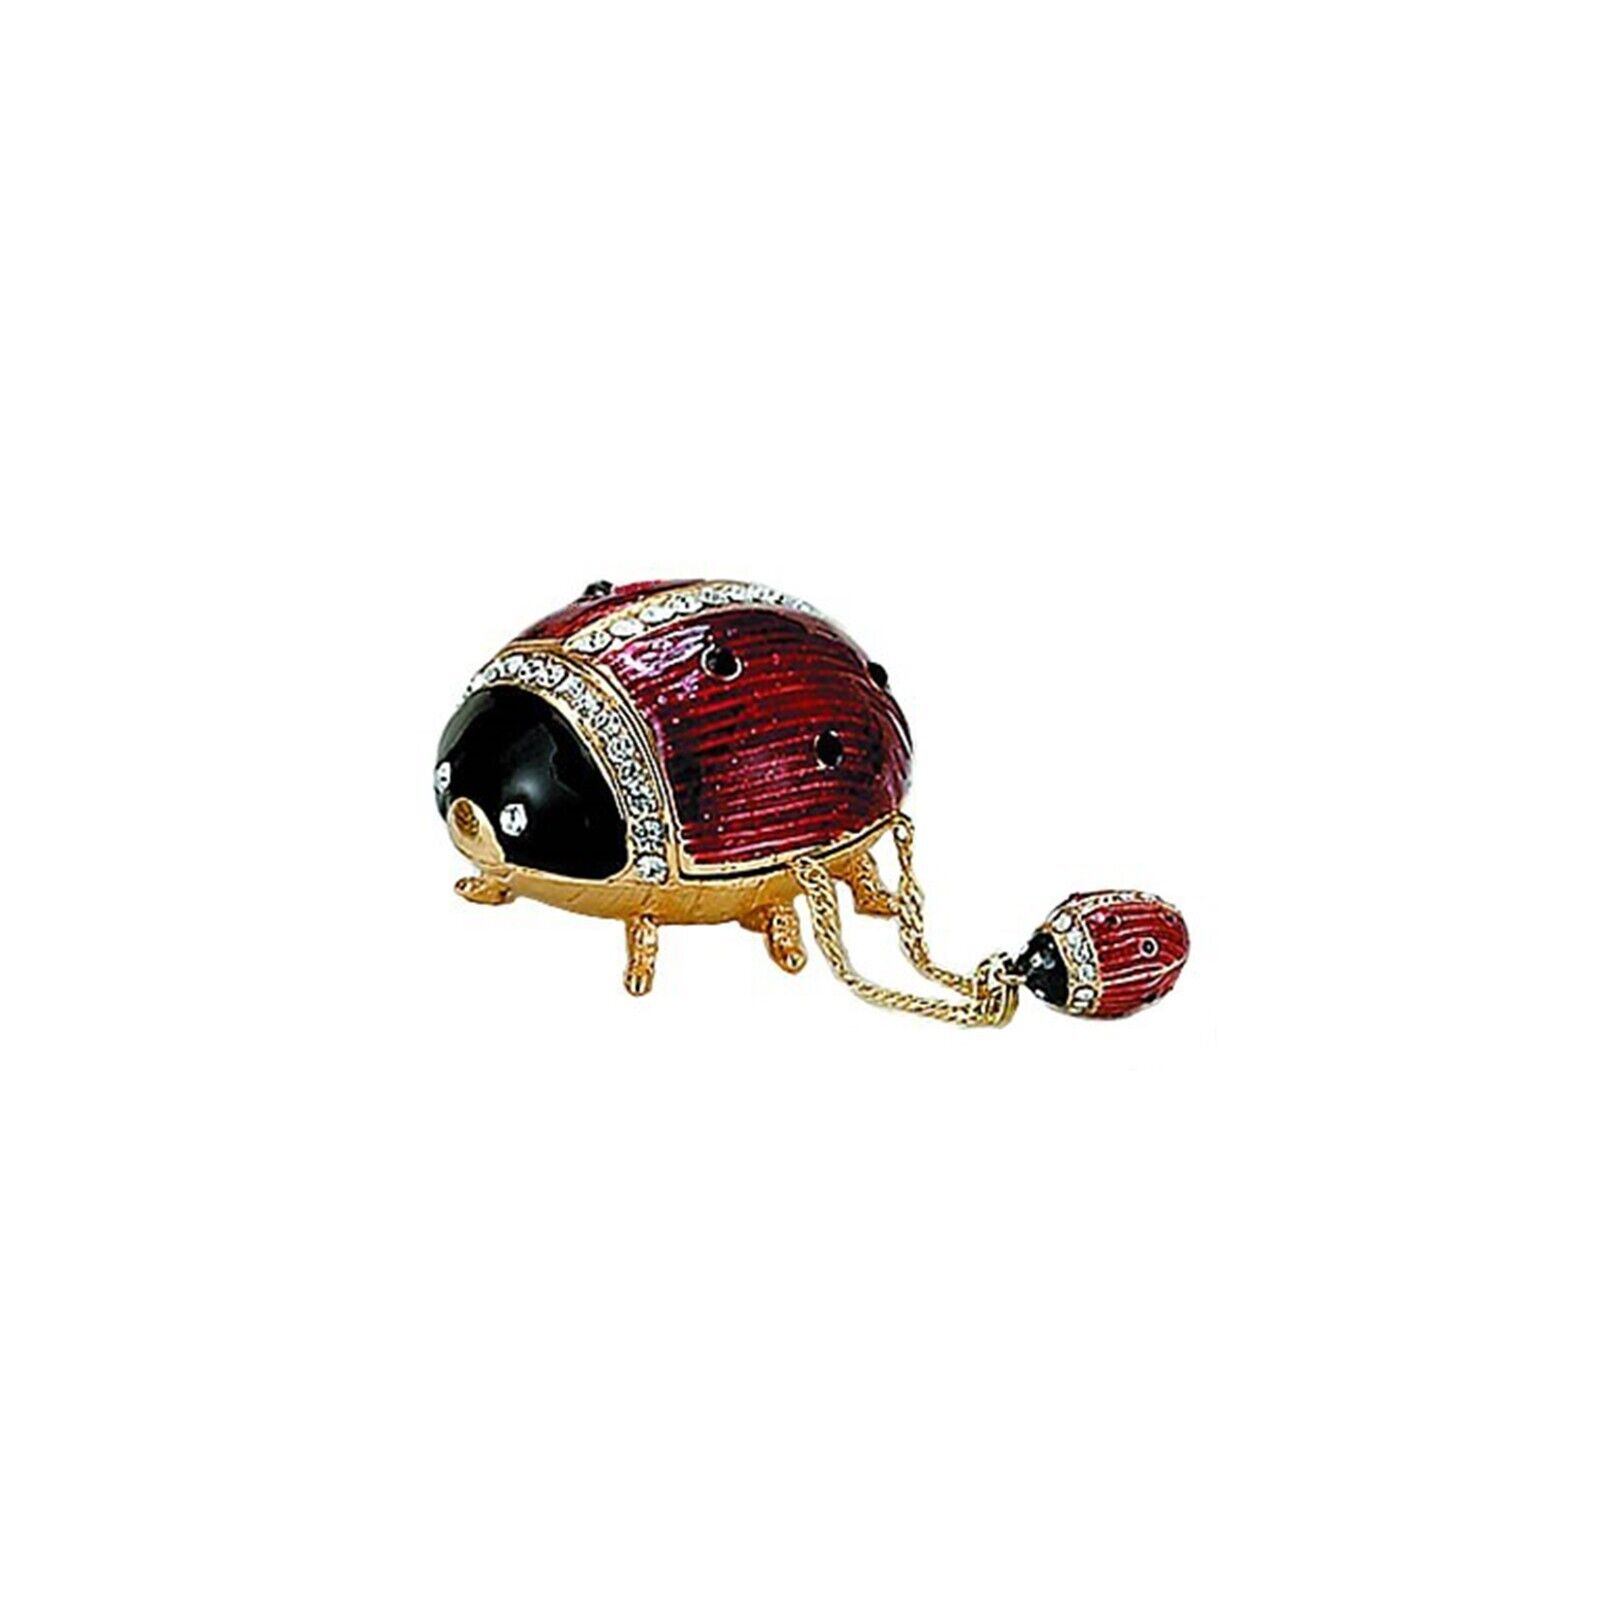 Kubla Craft Jeweled Enameled Trinket Box: Ladybug Box w/Pendant Necklace, #4006